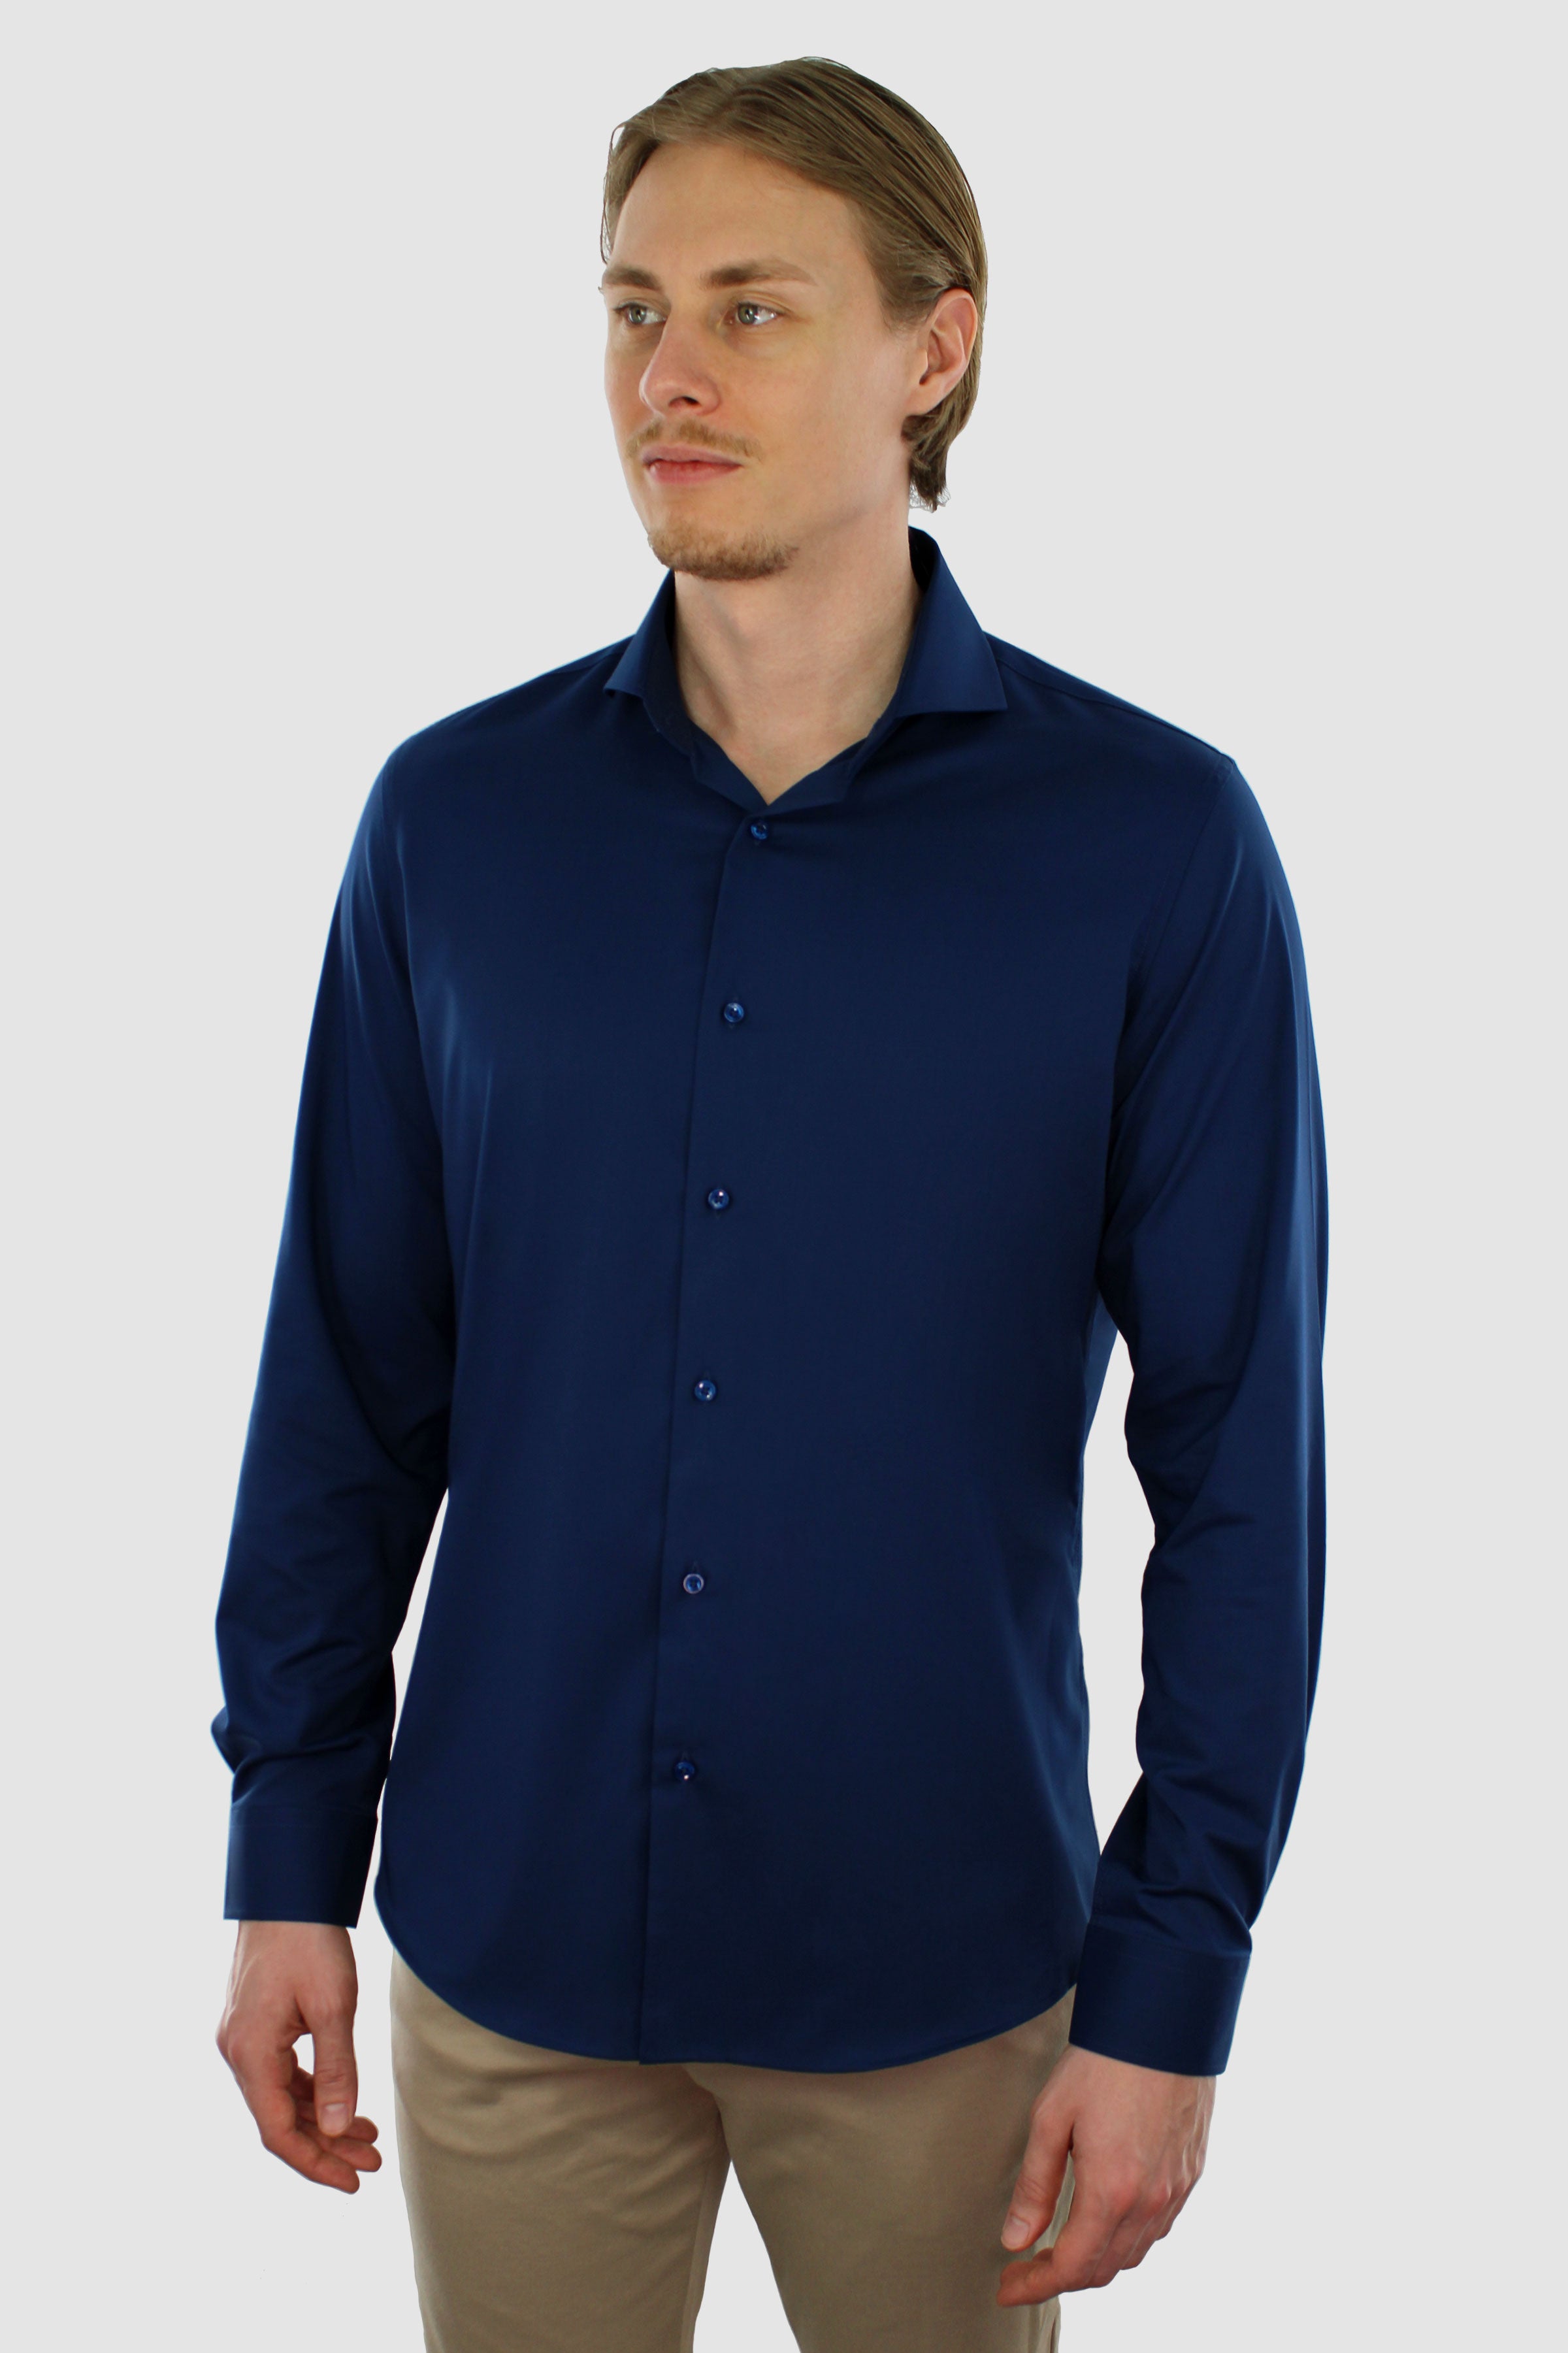 Strijkvrij overhemd voor heren in de kleur navy. Gemaakt van bamboe.